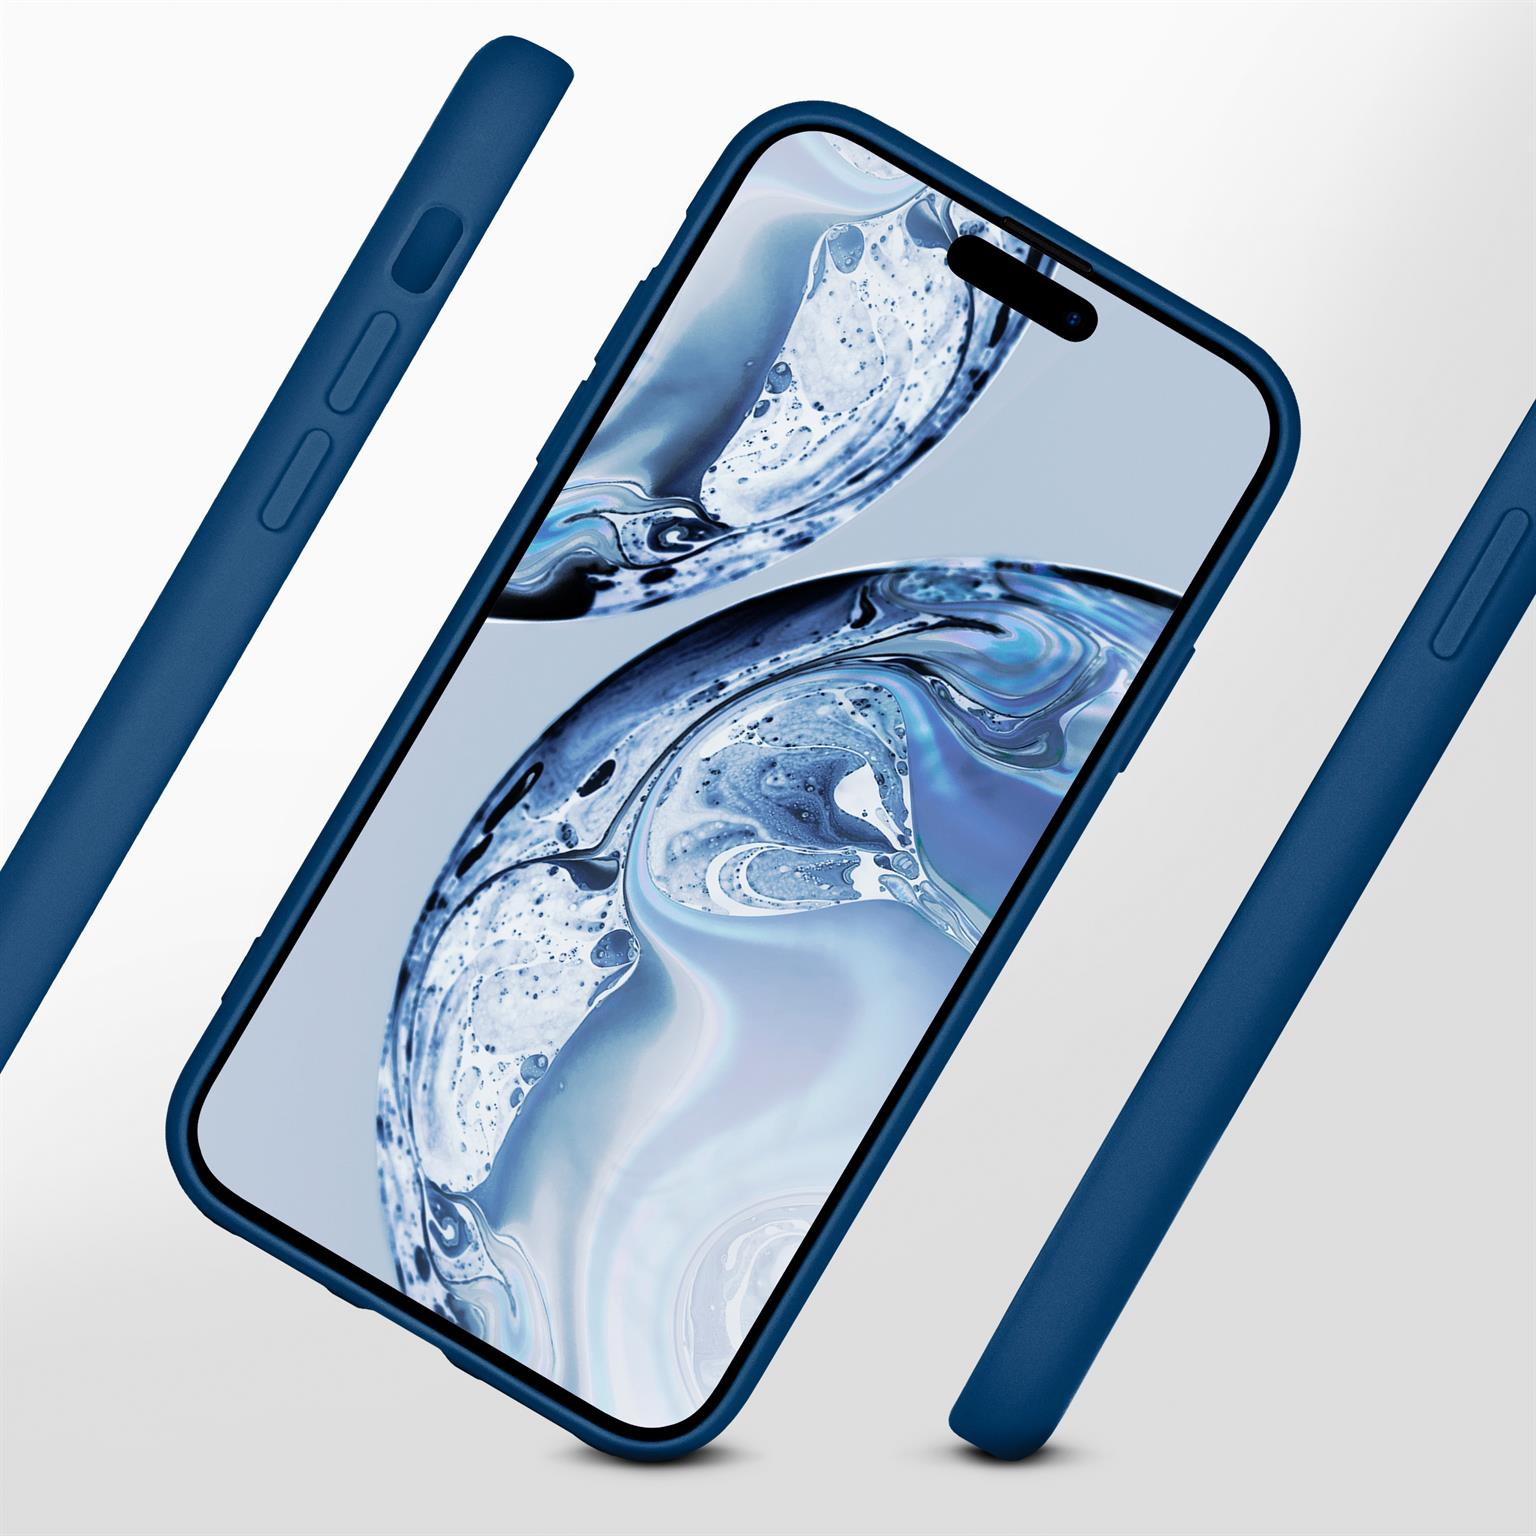 ONEFLOW Soft Case, Backcover, 14 Horizontblau Apple, iPhone Pro